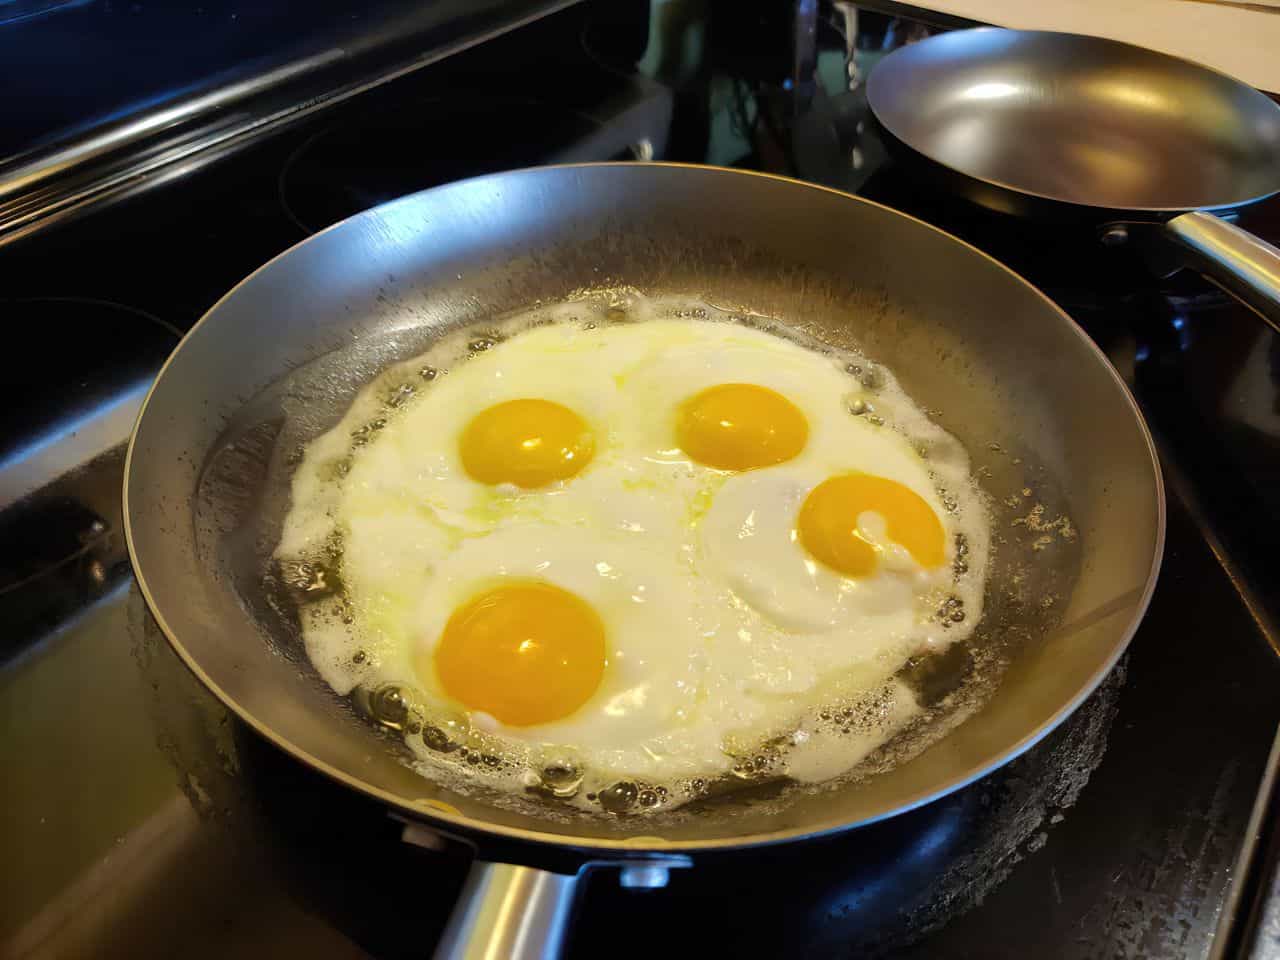 https://www.unfinishedman.com/wp-content/uploads/2021/06/lightweight-cast-iron-cooking-eggs.jpg